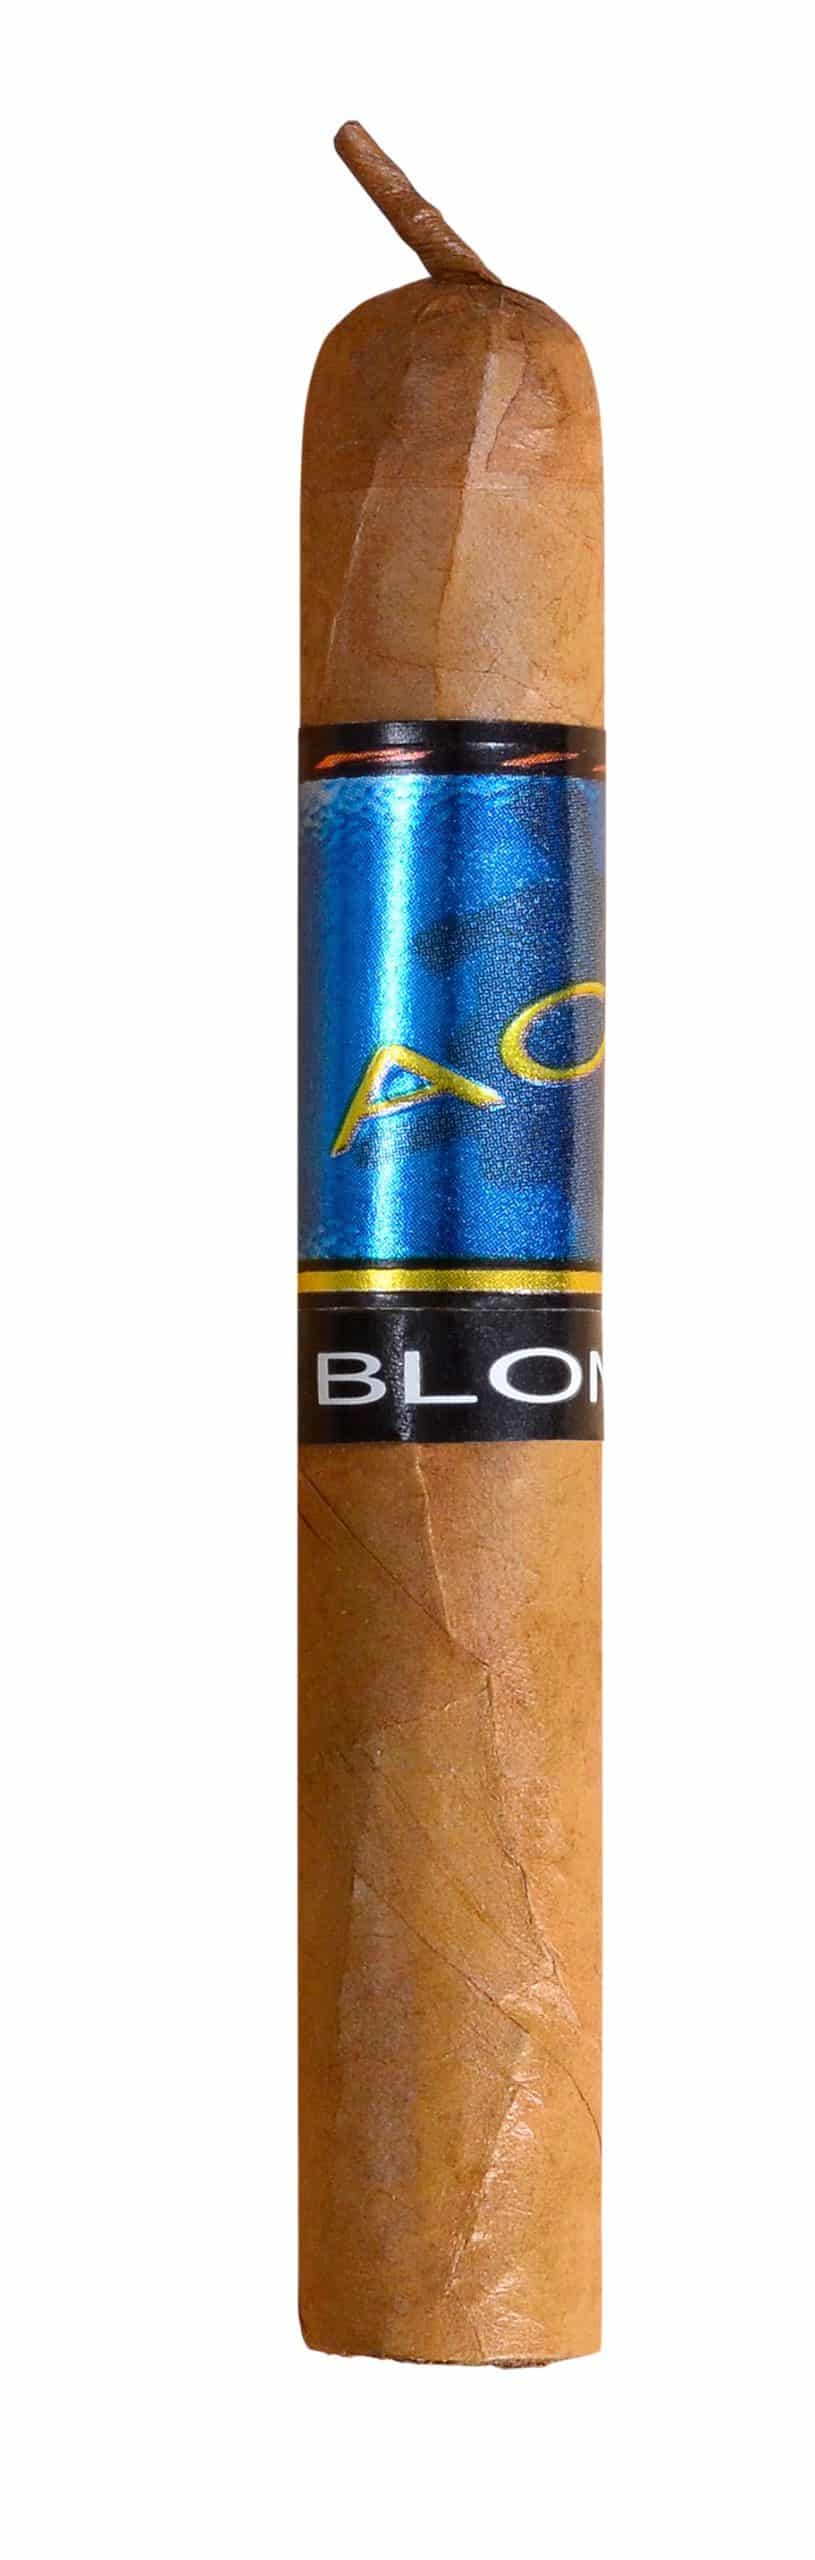 single acid blondie cigar